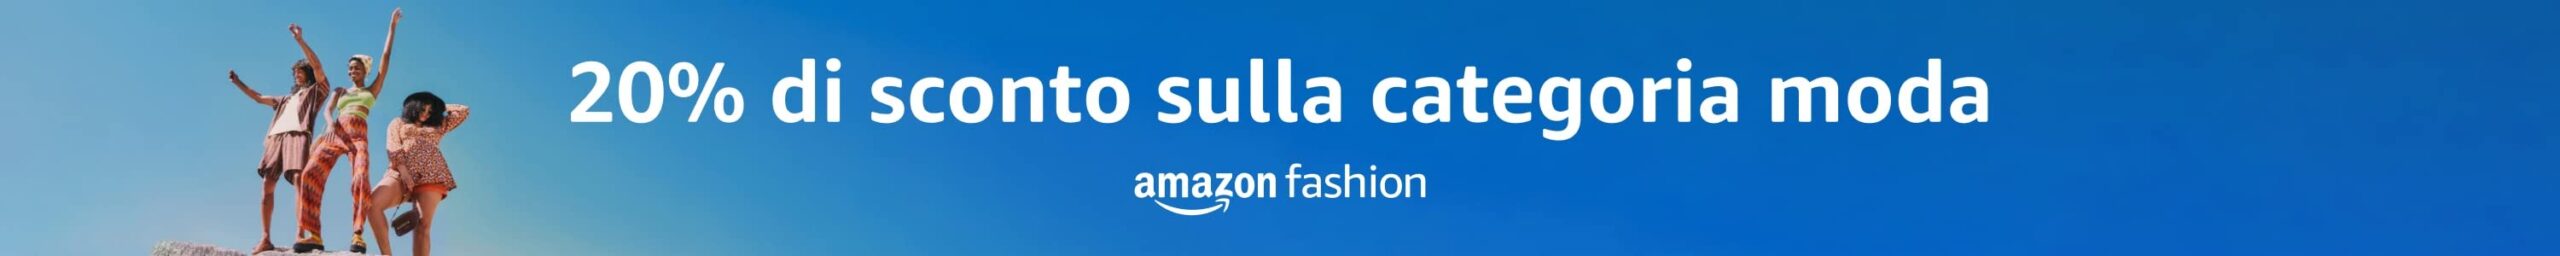 Amazon Fashion - 20% di sconto sulla categoria moda